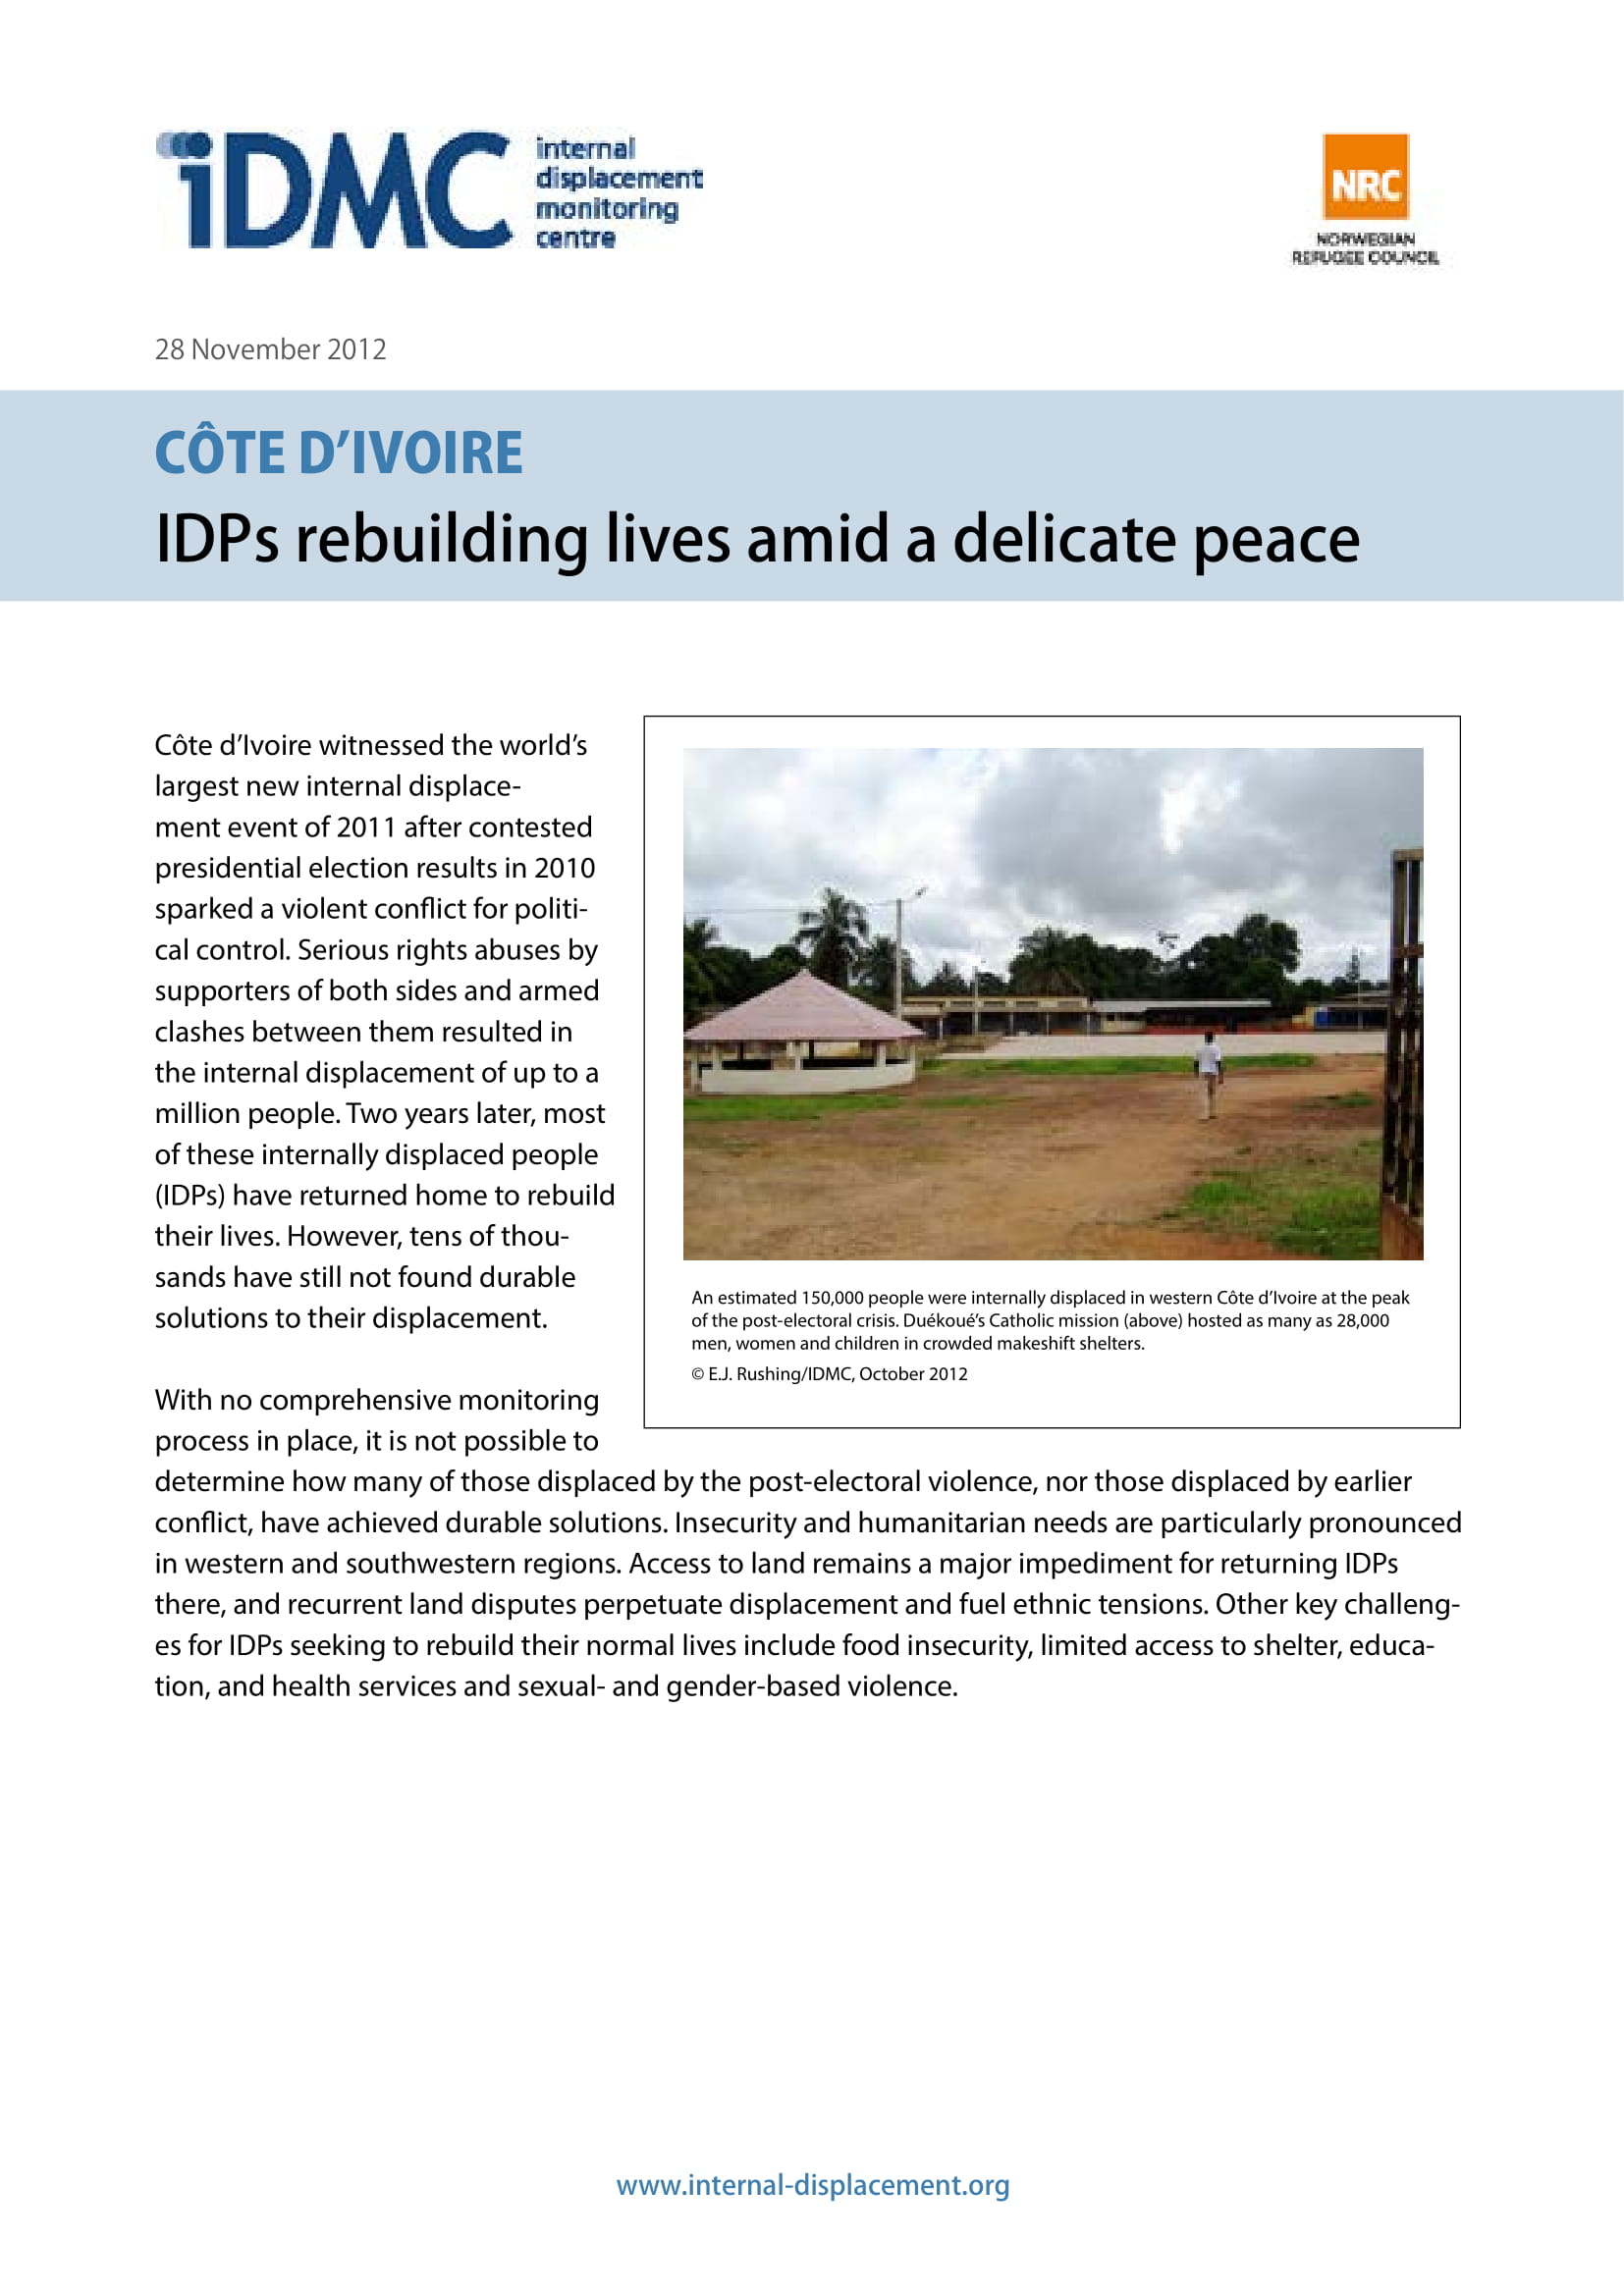 CÔTE D’IVOIRE: IDPs rebuilding lives amid a delicate peace